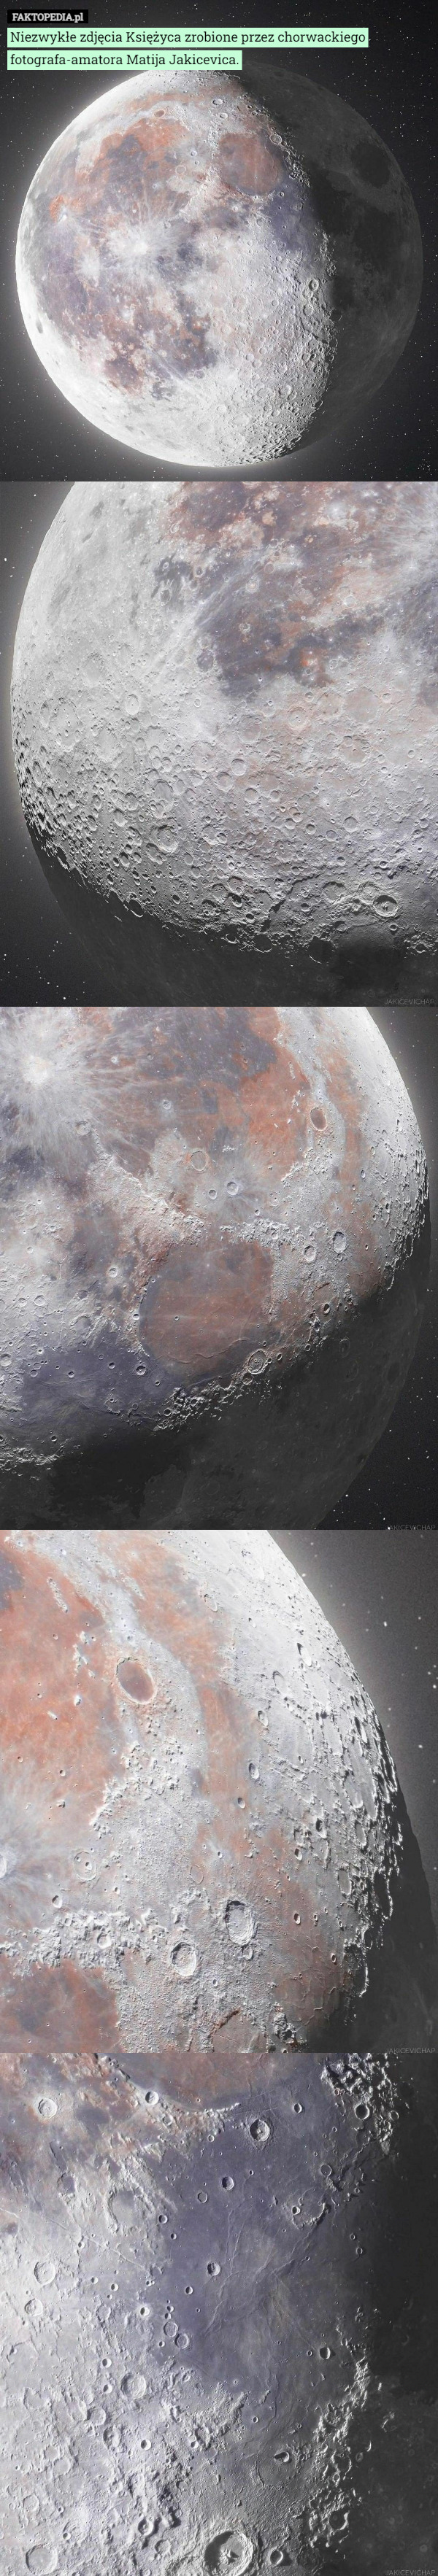 Niezwykłe zdjęcia Księżyca zrobione przez chorwackiego fotografa-amatora Matija Jakicevica. 